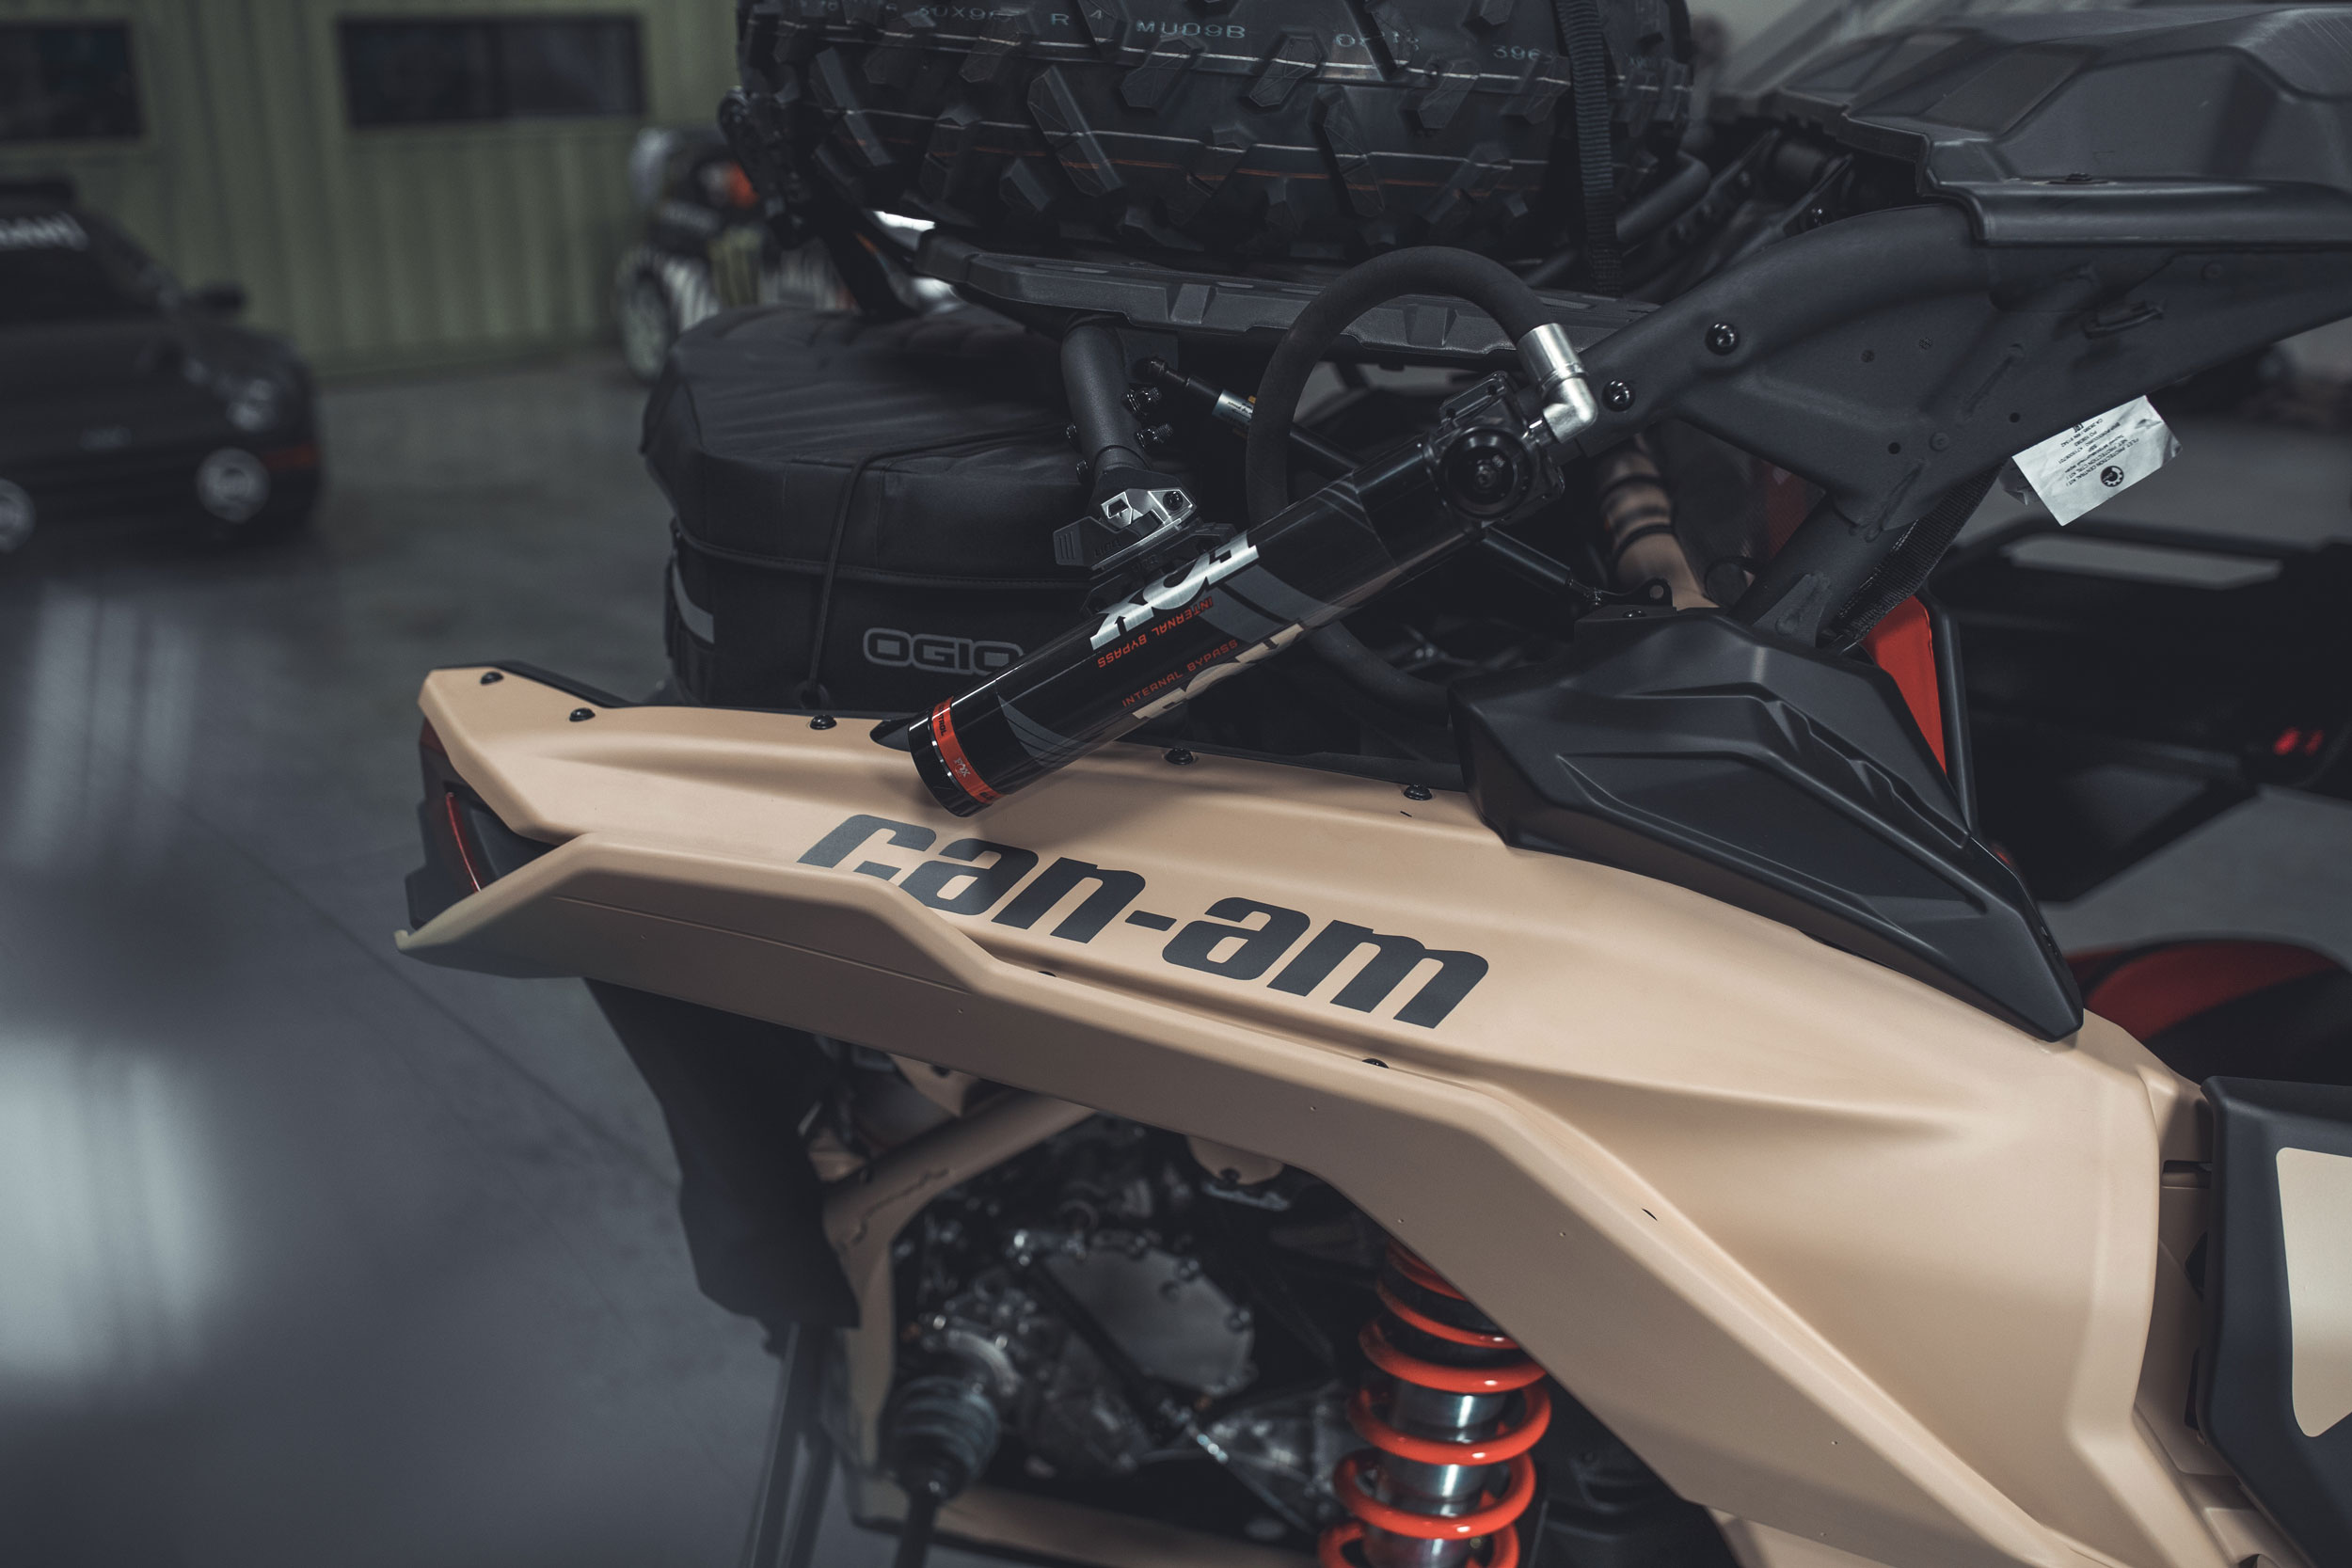 Can-Am terrengsykkel med semi-aktiv fjæringsteknologi og komfort